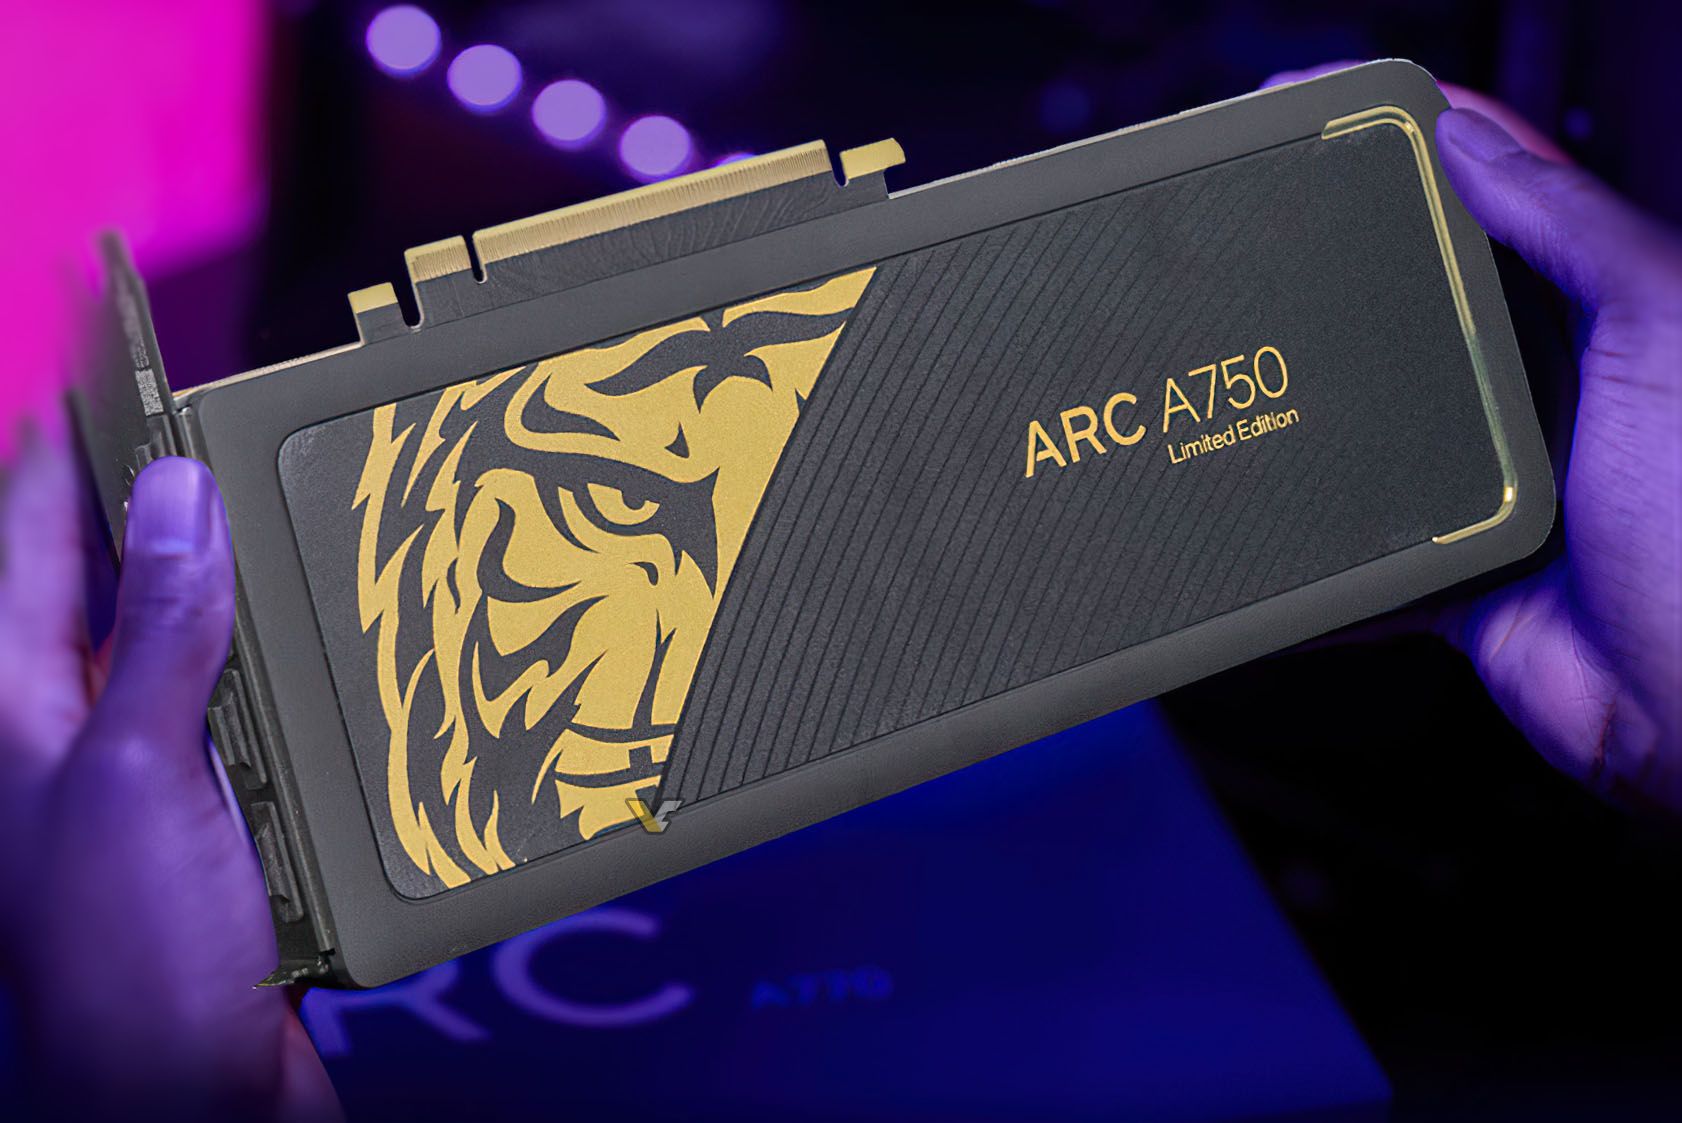 intel arc a750 china 2 อินเทลเปิดตัว Intel Arc A750 Limited ‘Gold’ Edition รุ่นพิเศษวางจำหน่ายในประเทศจีน 